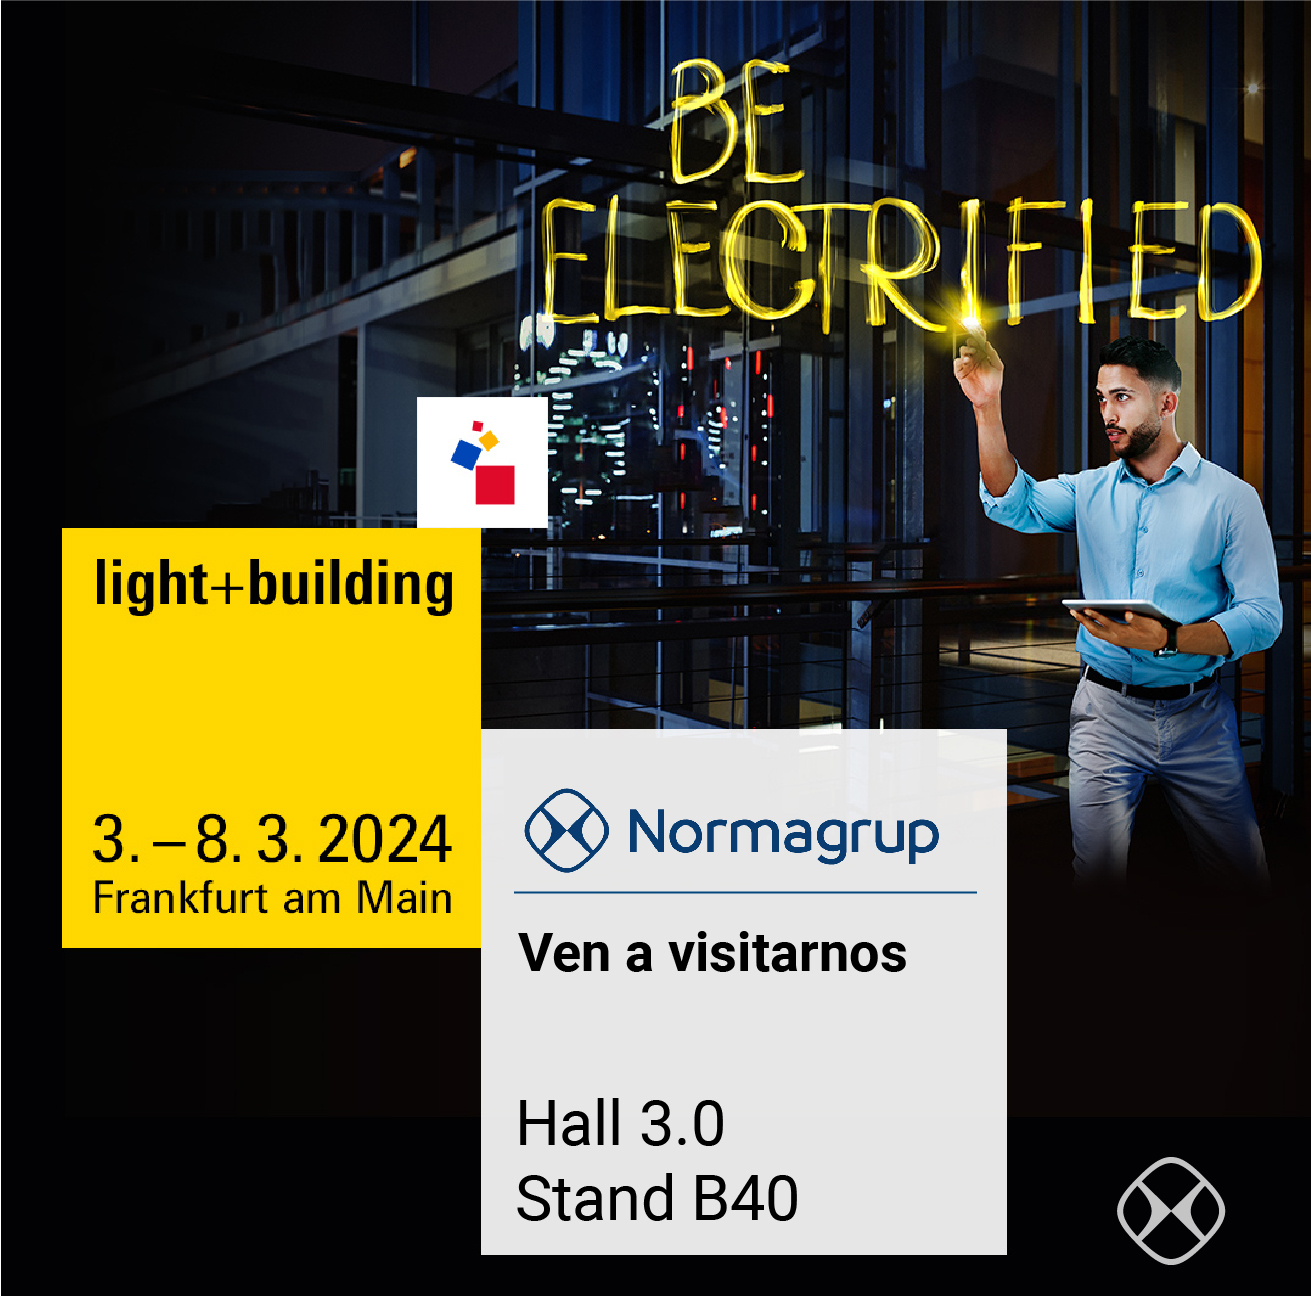 NORMAGRUP À LIGHT + BUILDING 2024